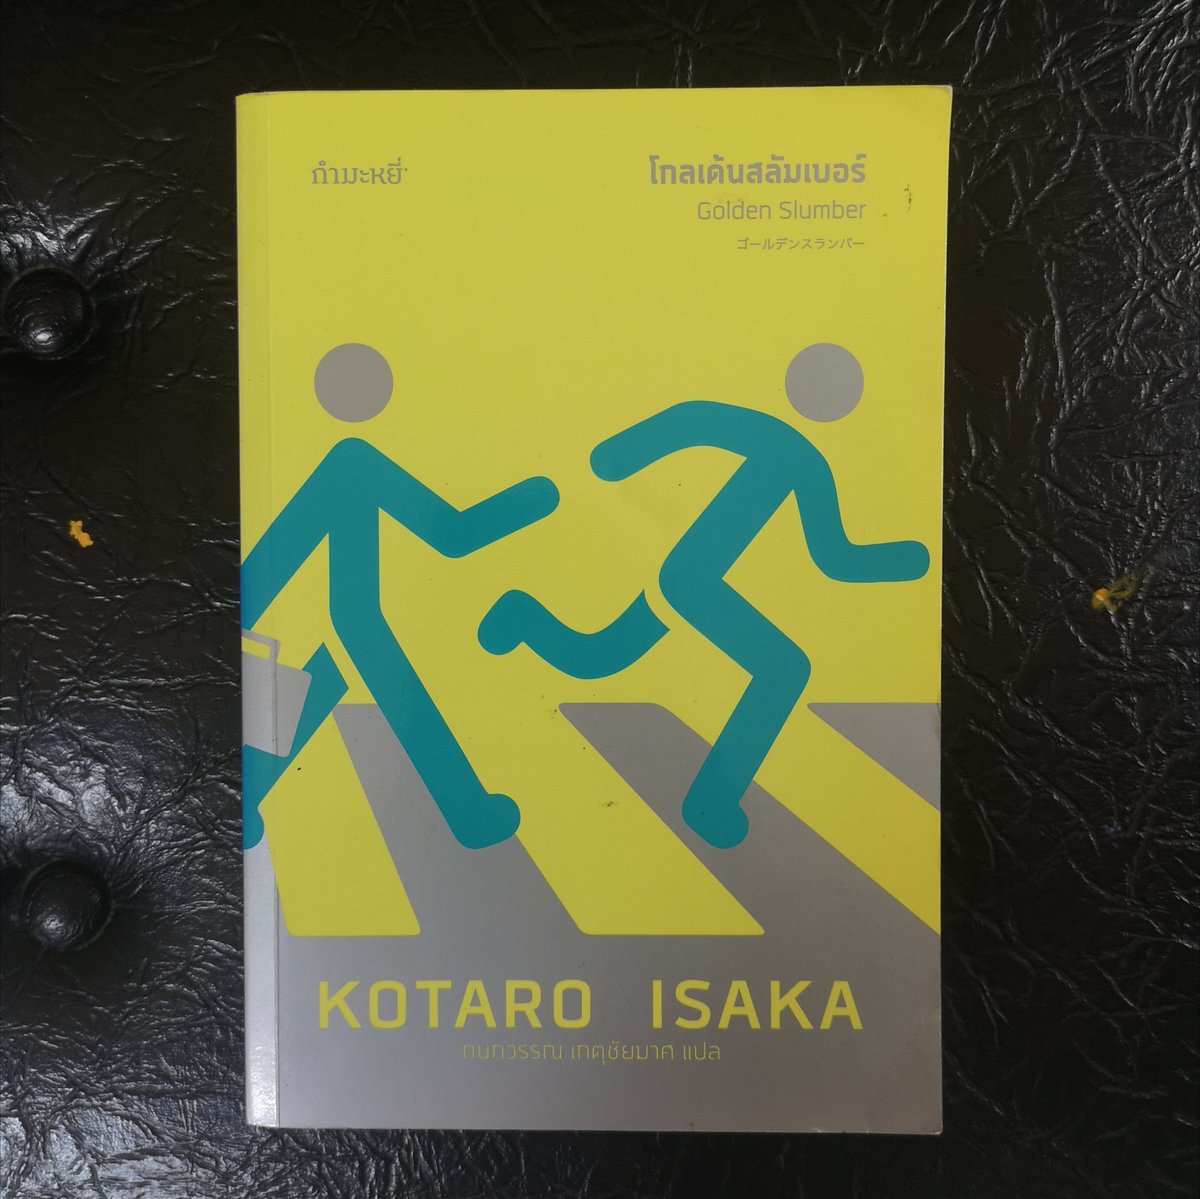 #หนังสือมือสอง #หนังสือสะสม 222 บาท, รวมส่งลงทะเบียน
#โกลเด้นสลัมเบอร์ #GoldenSlumber
#KotaroIsaka เขียน
#กนกวรรณเกตุชัยมาศ แปล